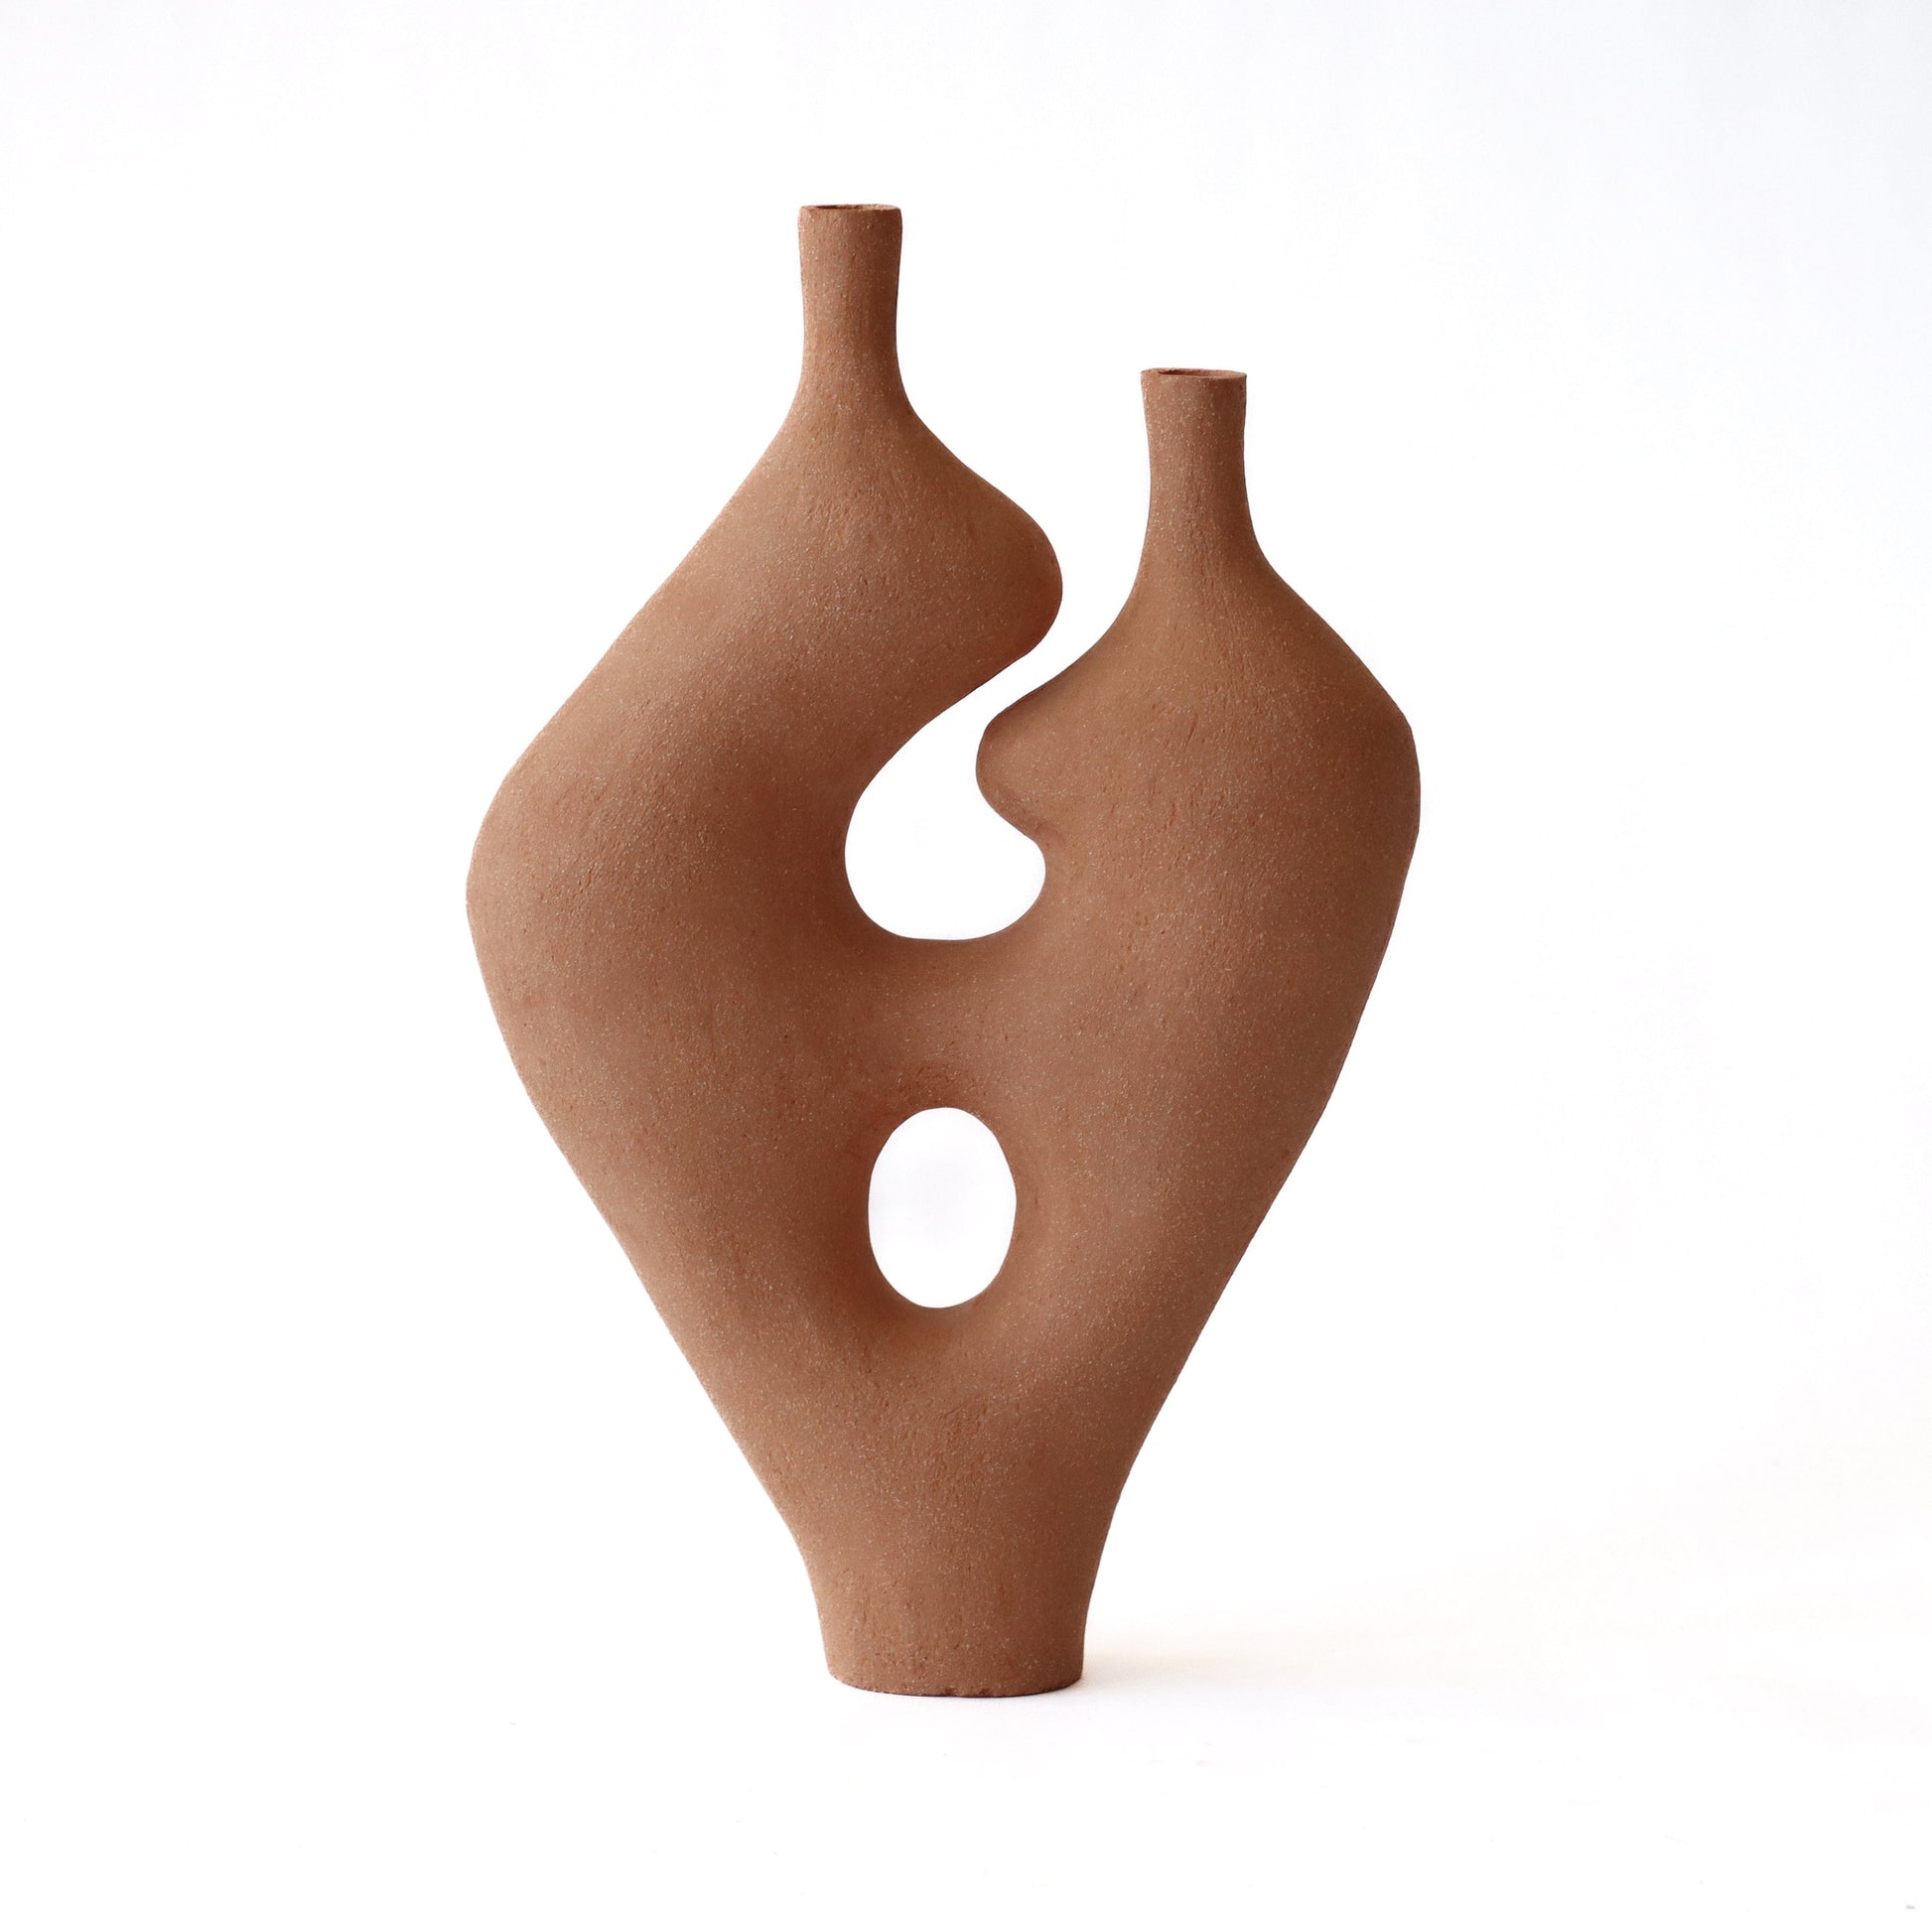 Form Vase #40 by Whitney Bender